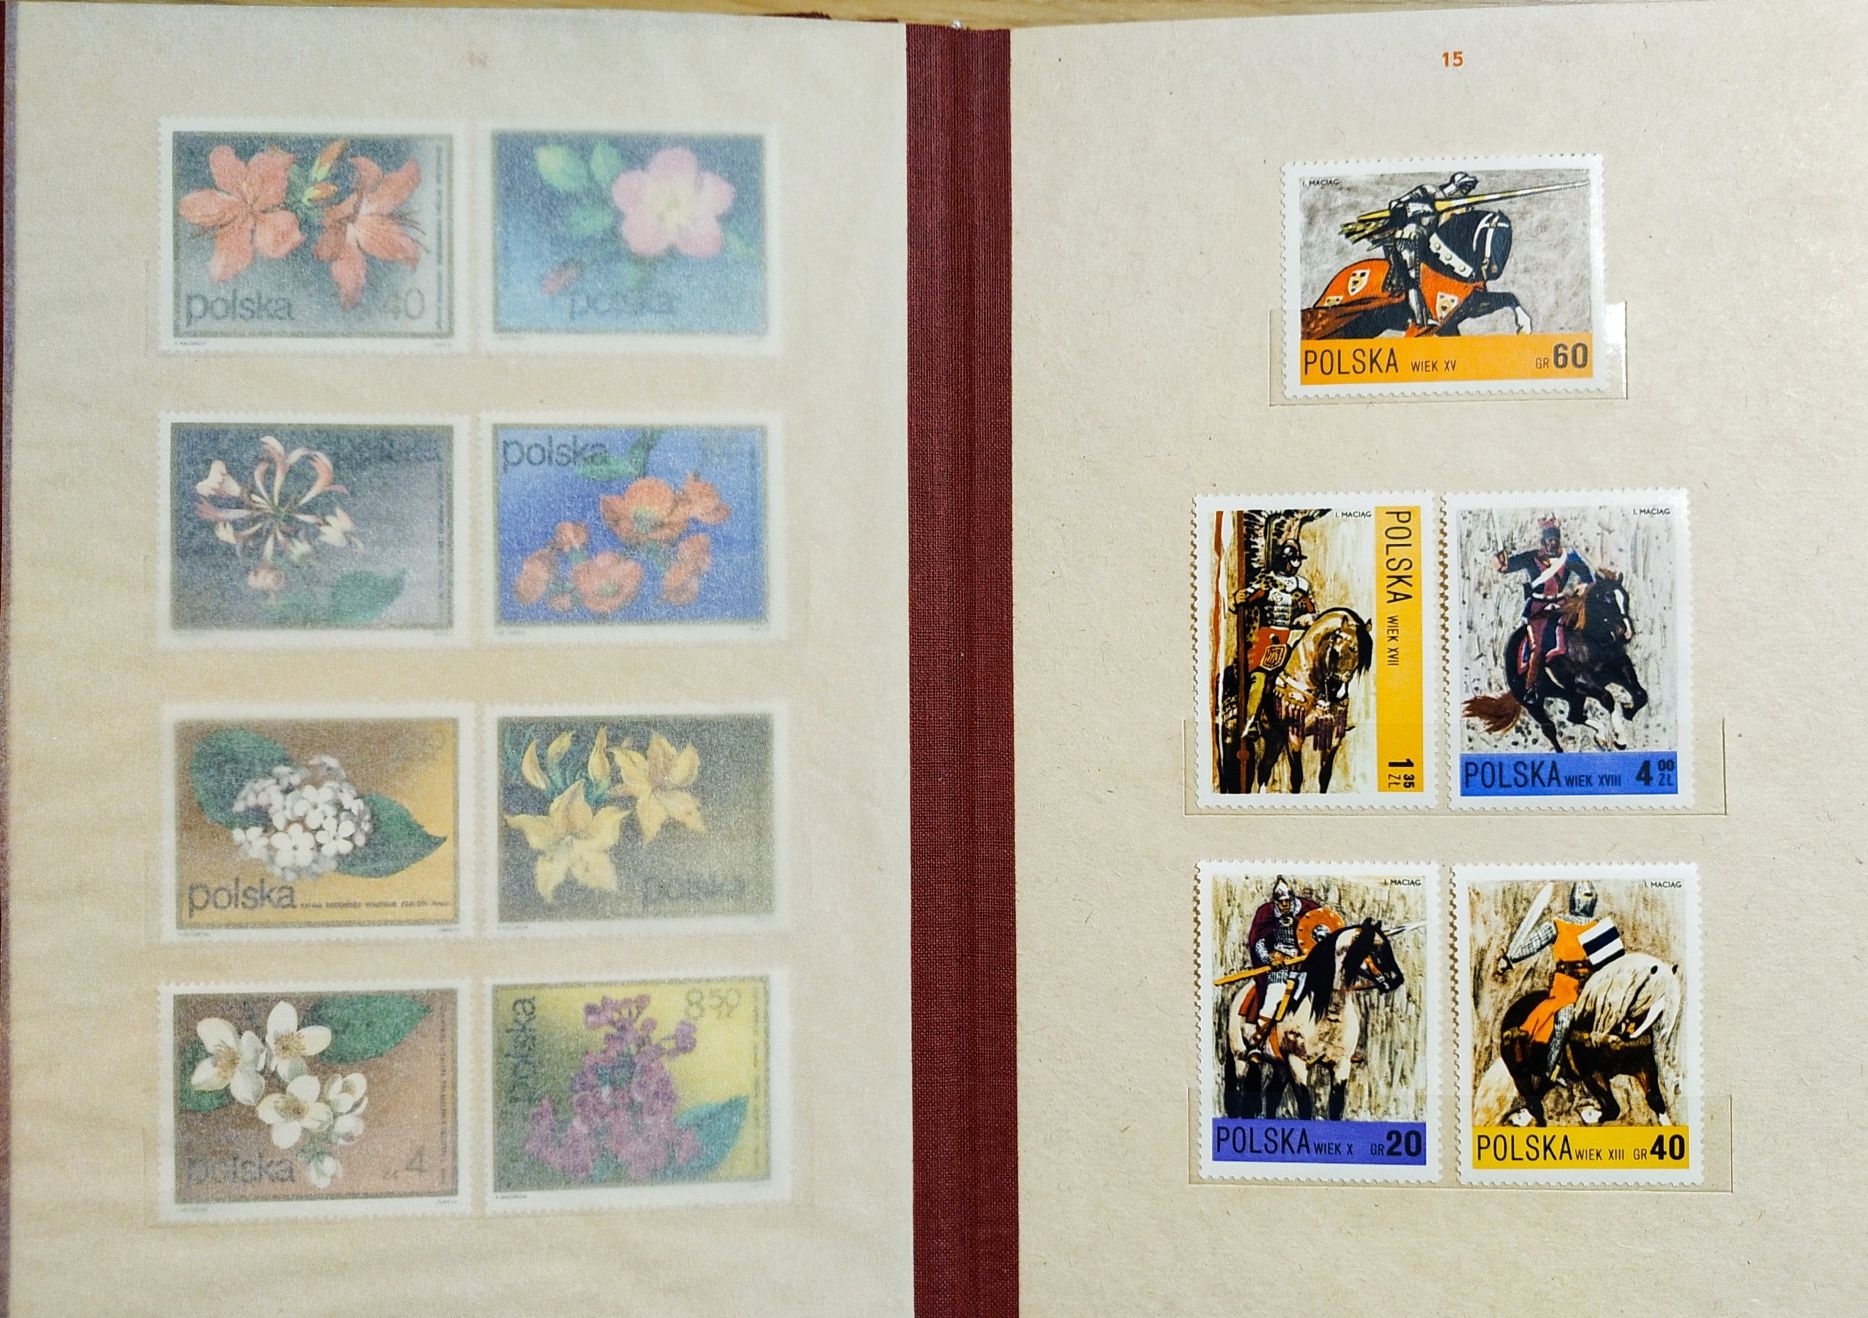 Klaser rocznikowy Polska tom X 72-73 - kompletny, znaczki czyste